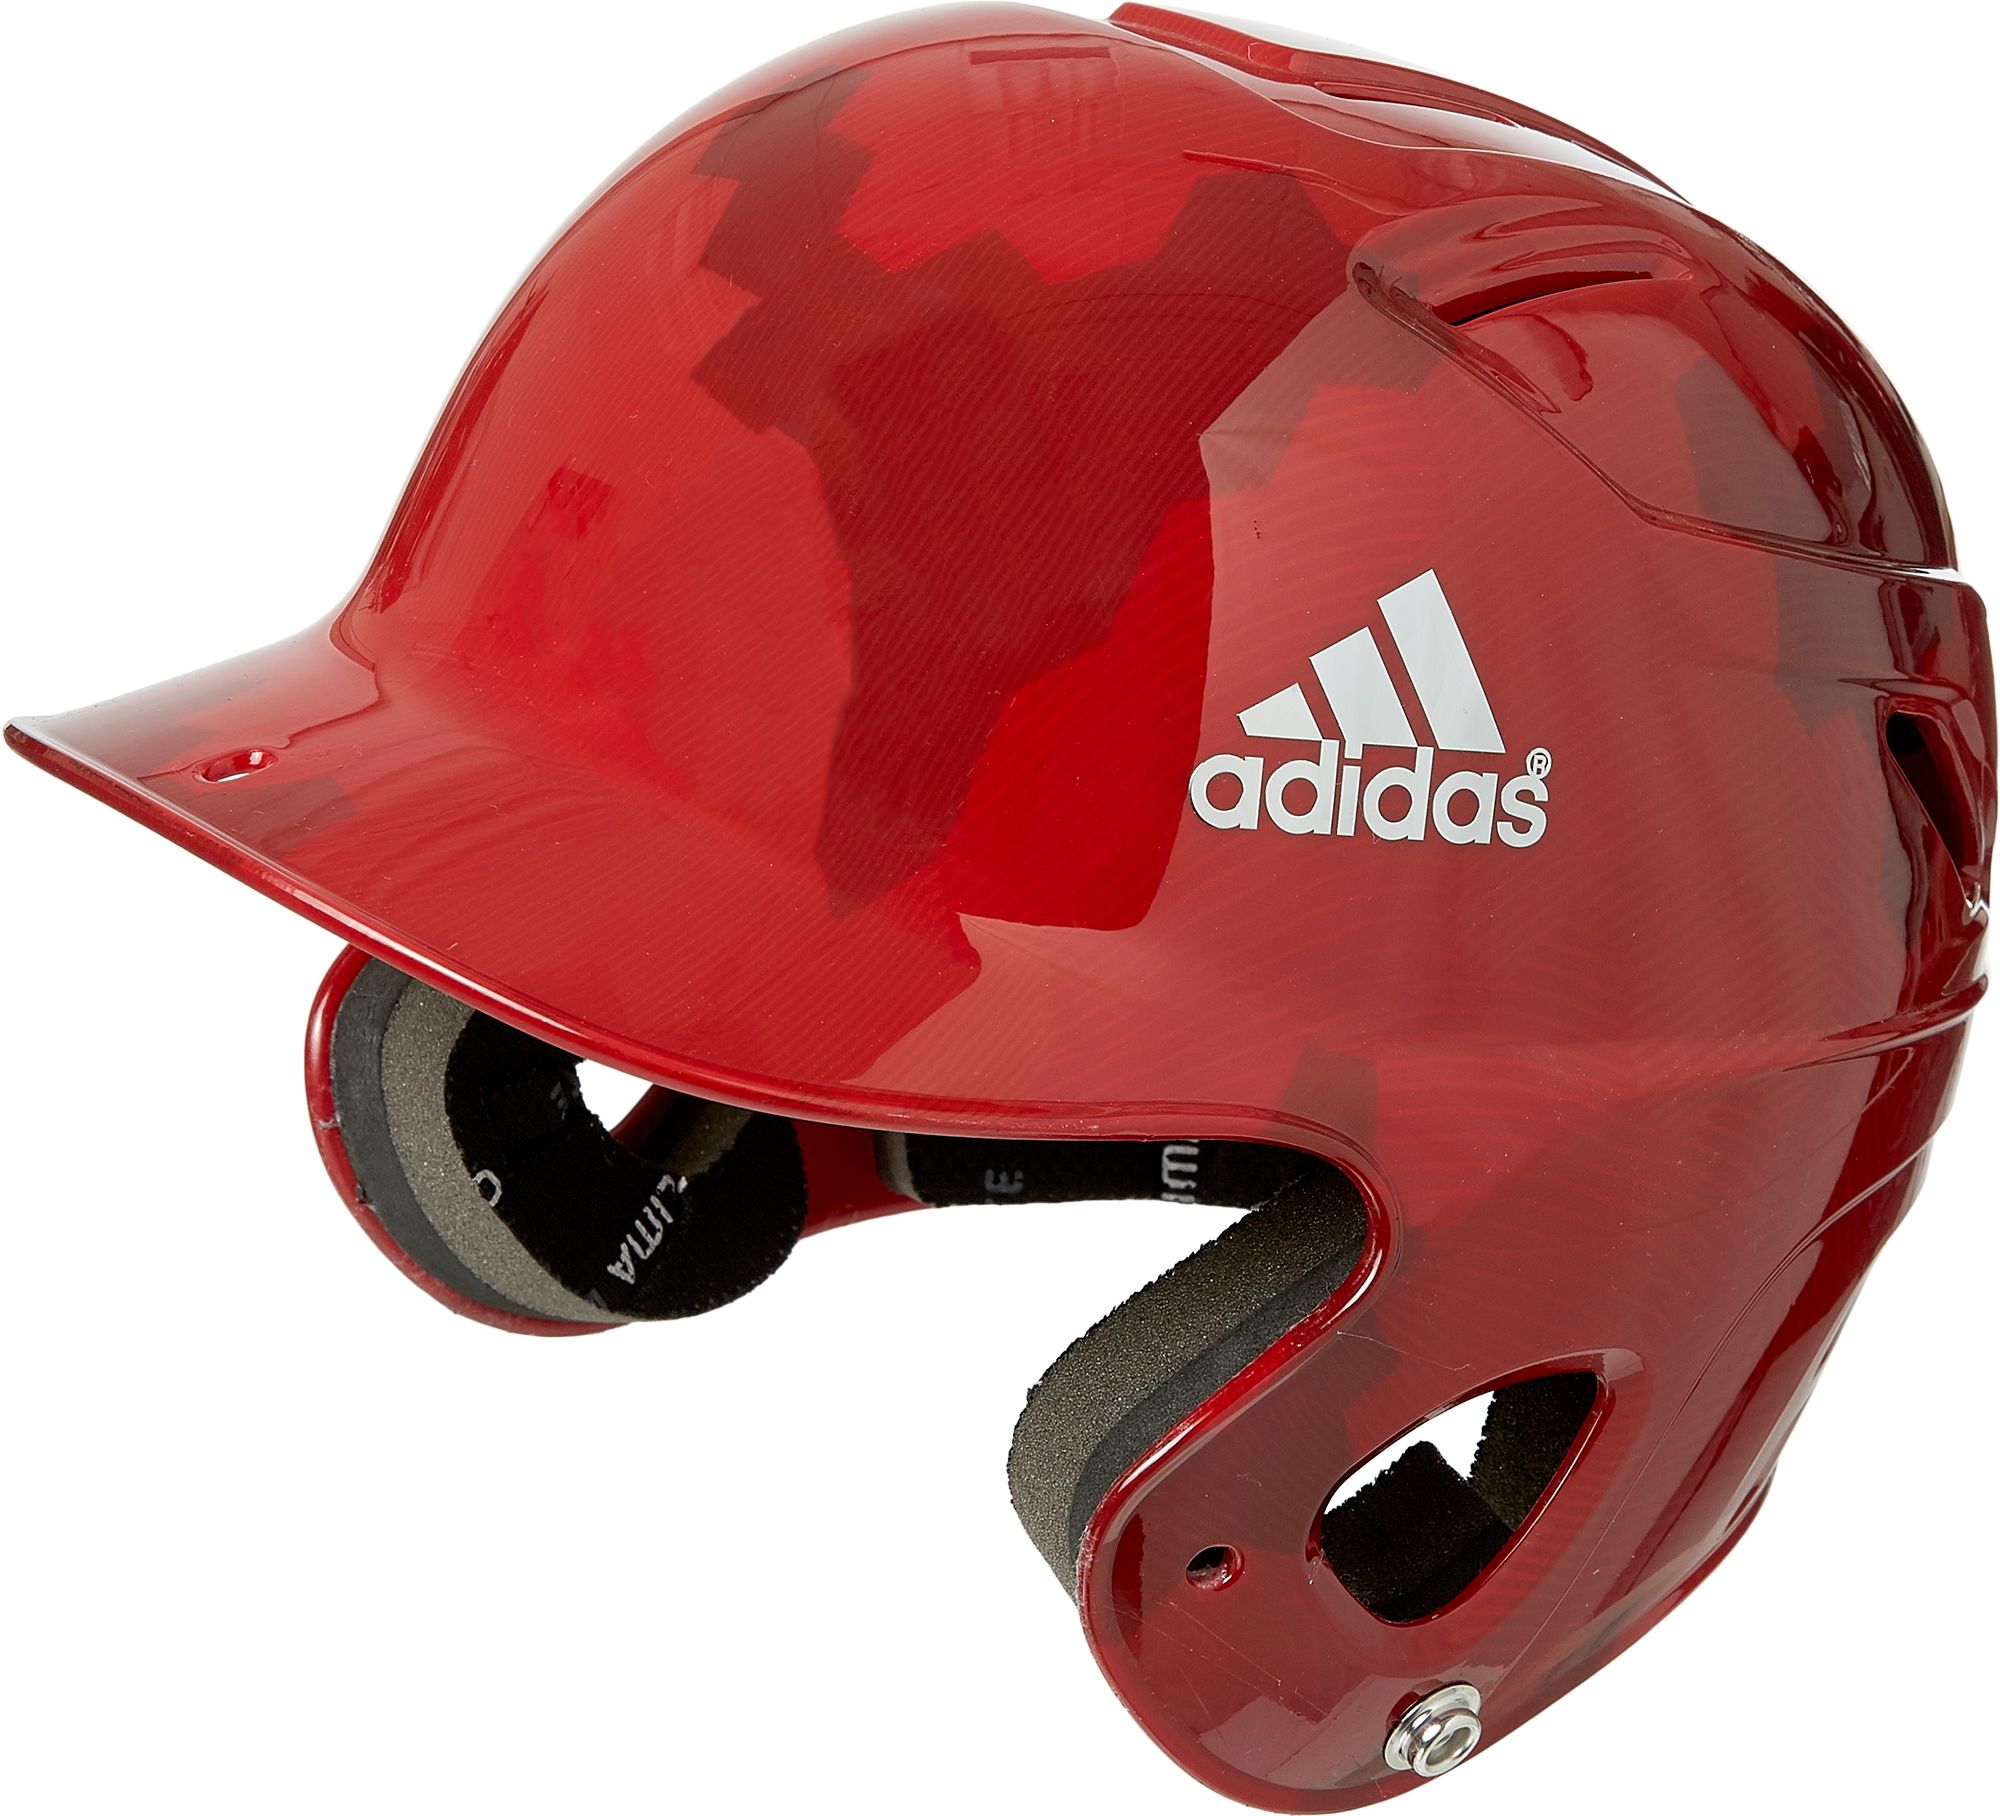 adidas tee ball helmet